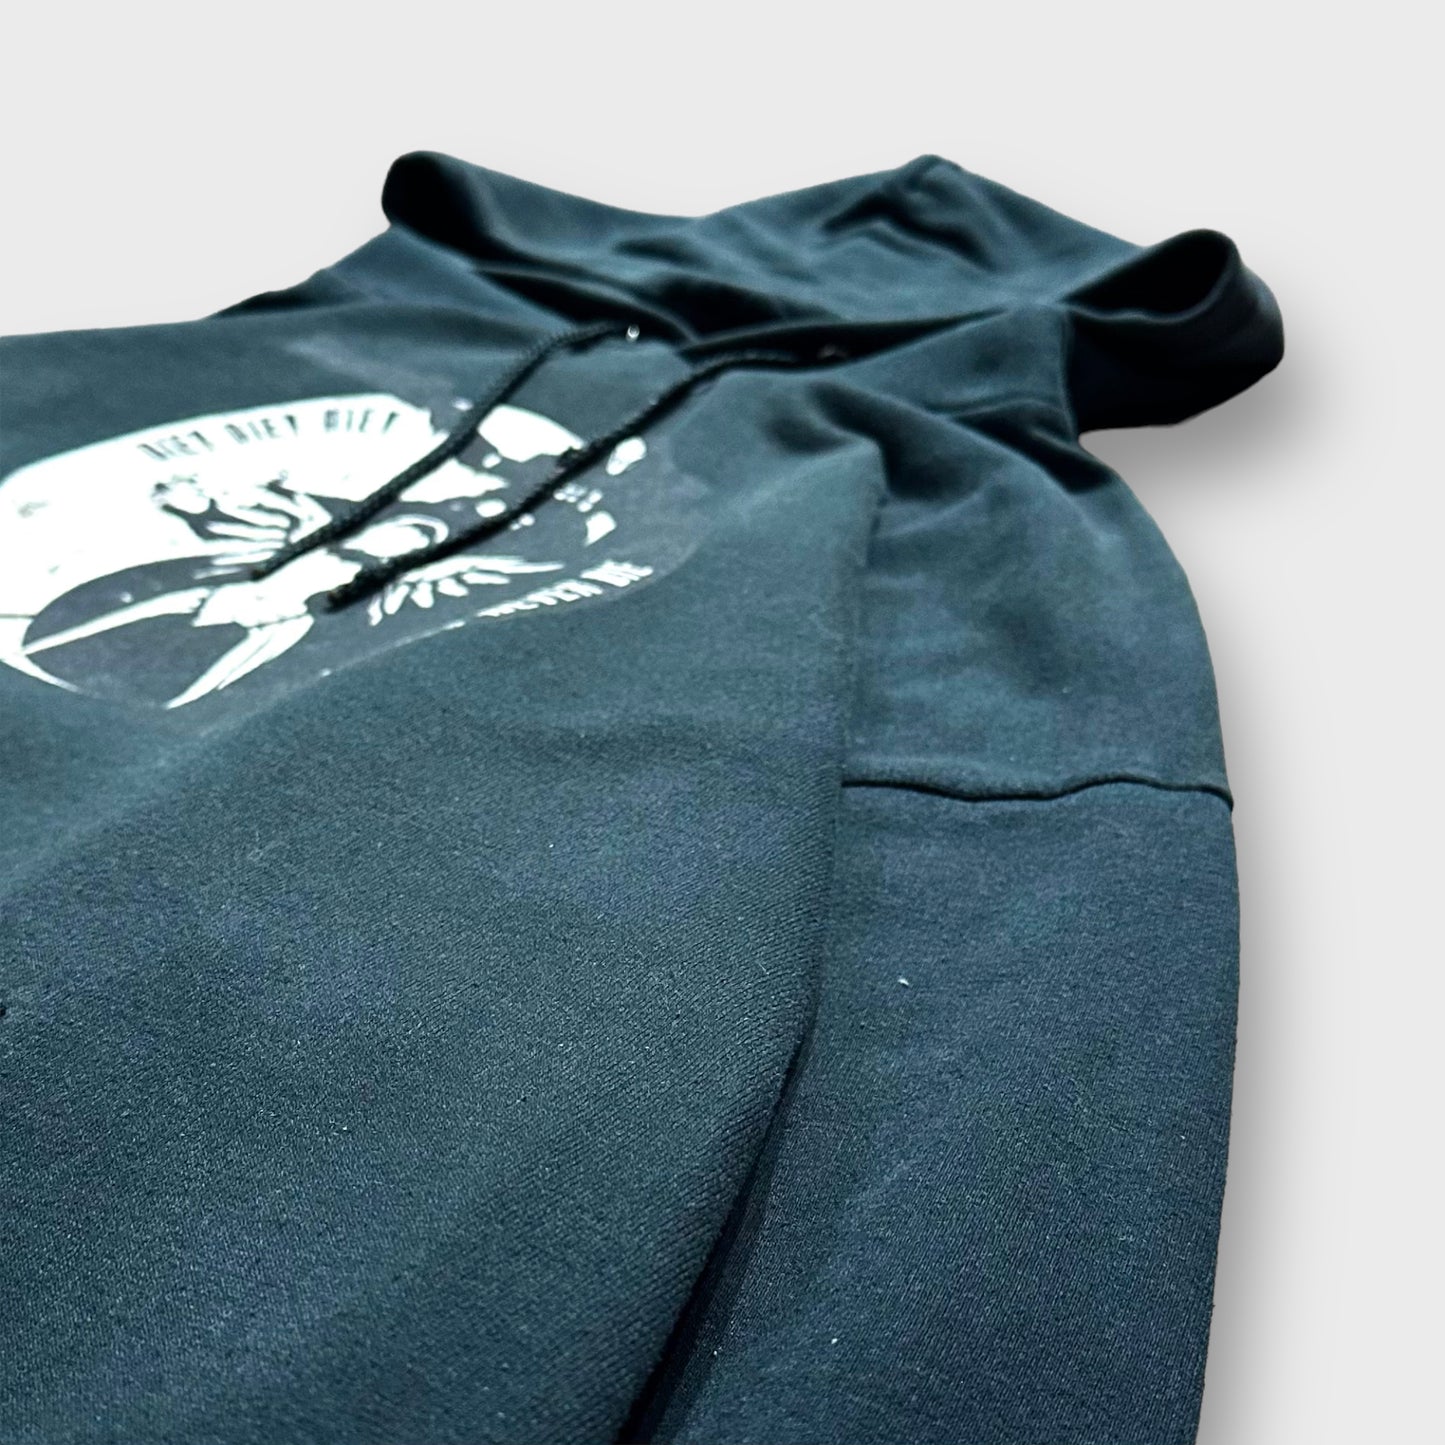 "Overwatch" Design hoodie